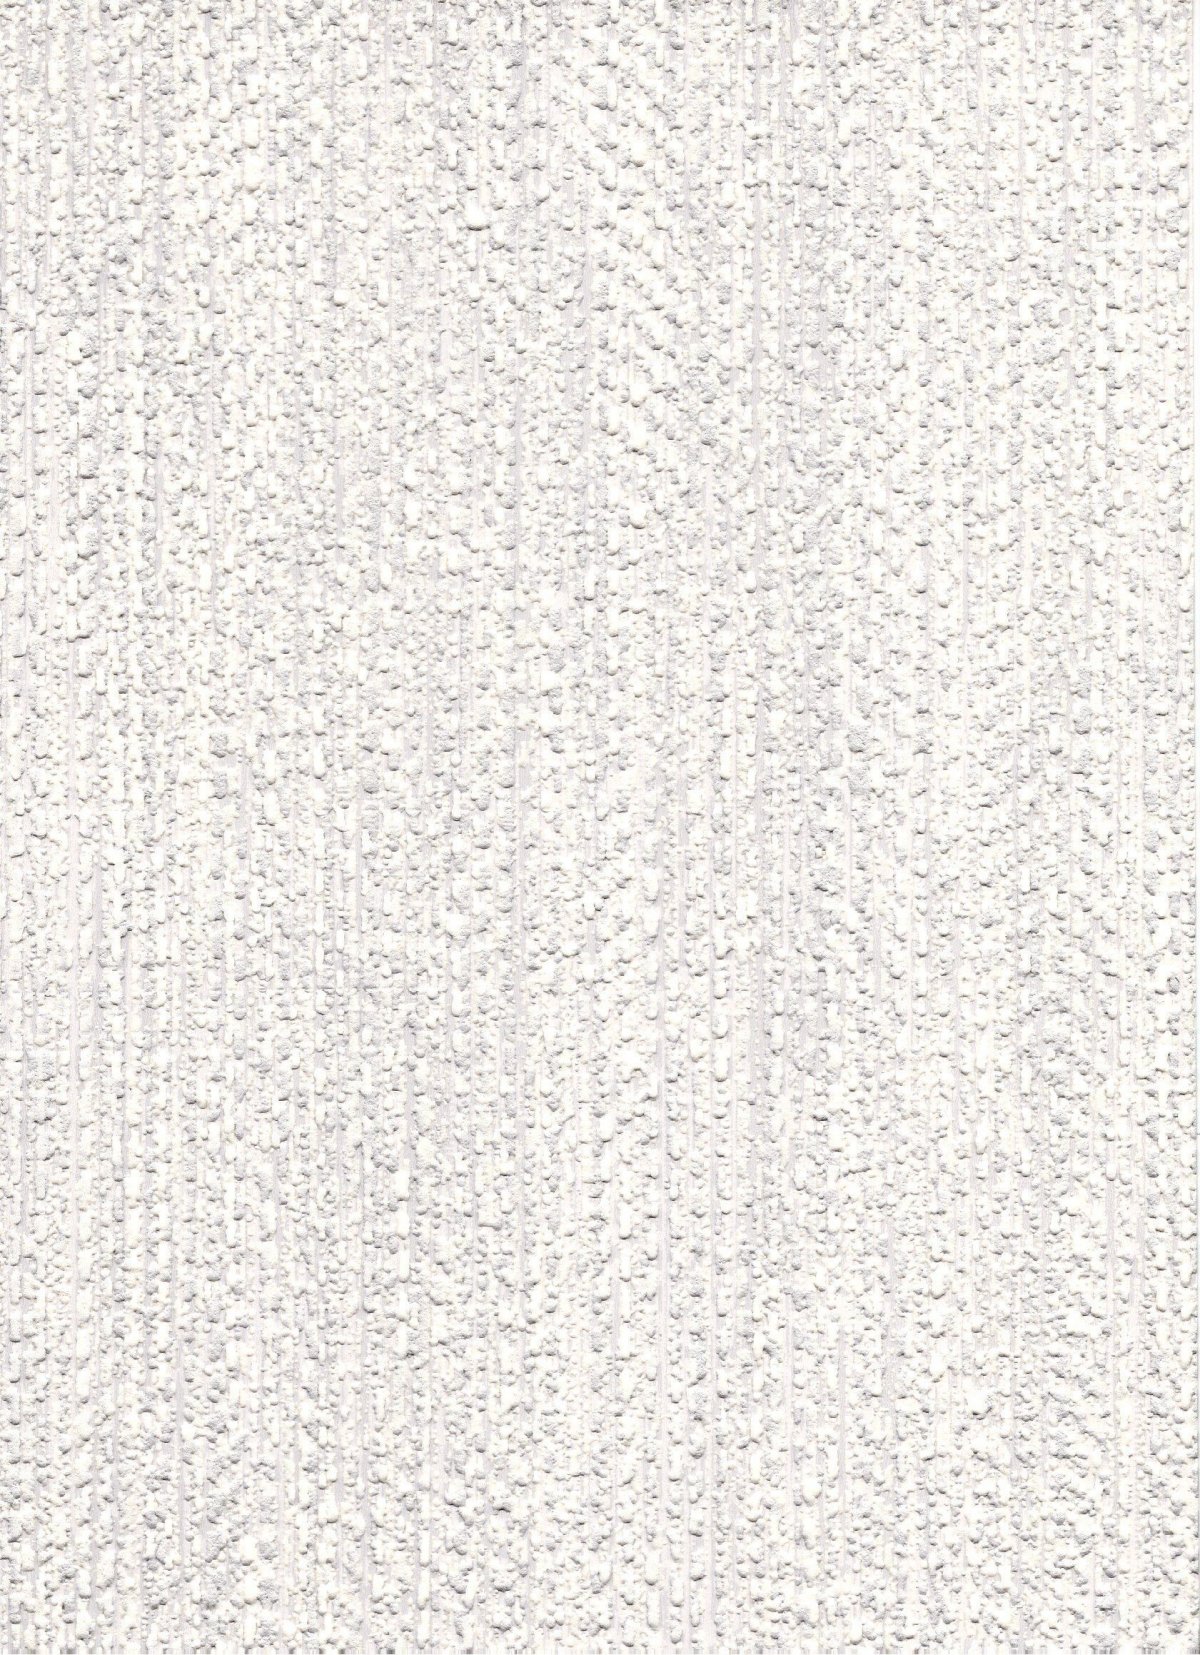 Белая ткань текстура бесшовная